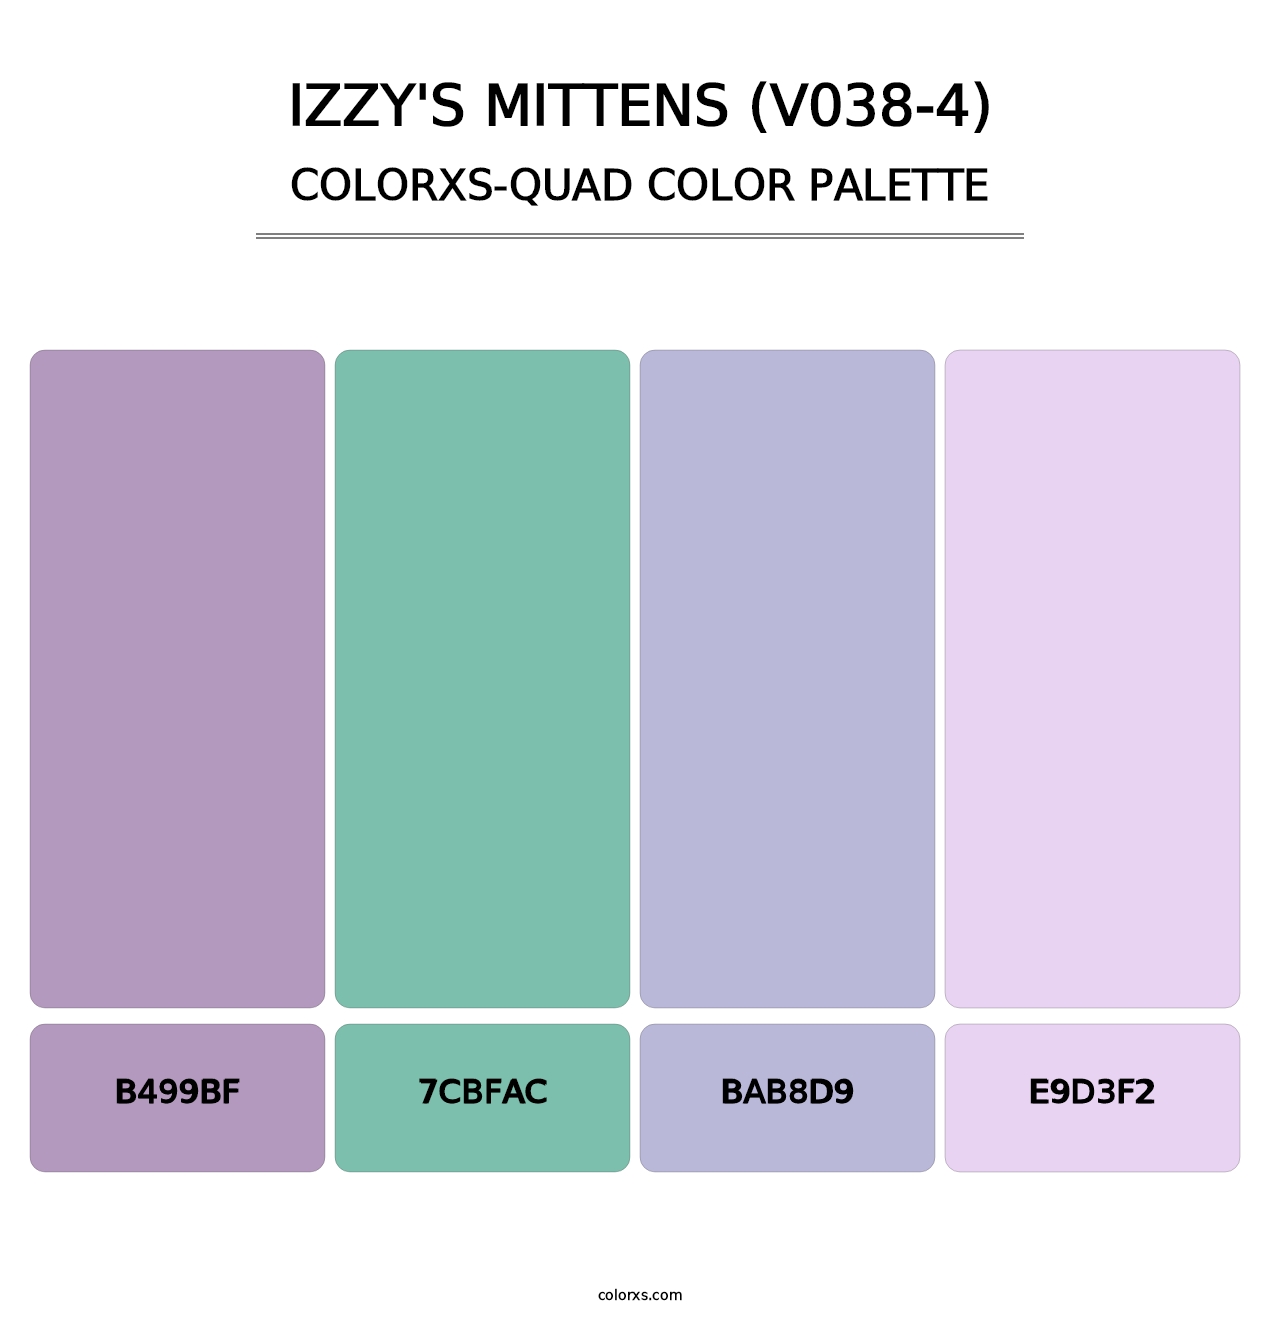 Izzy's Mittens (V038-4) - Colorxs Quad Palette